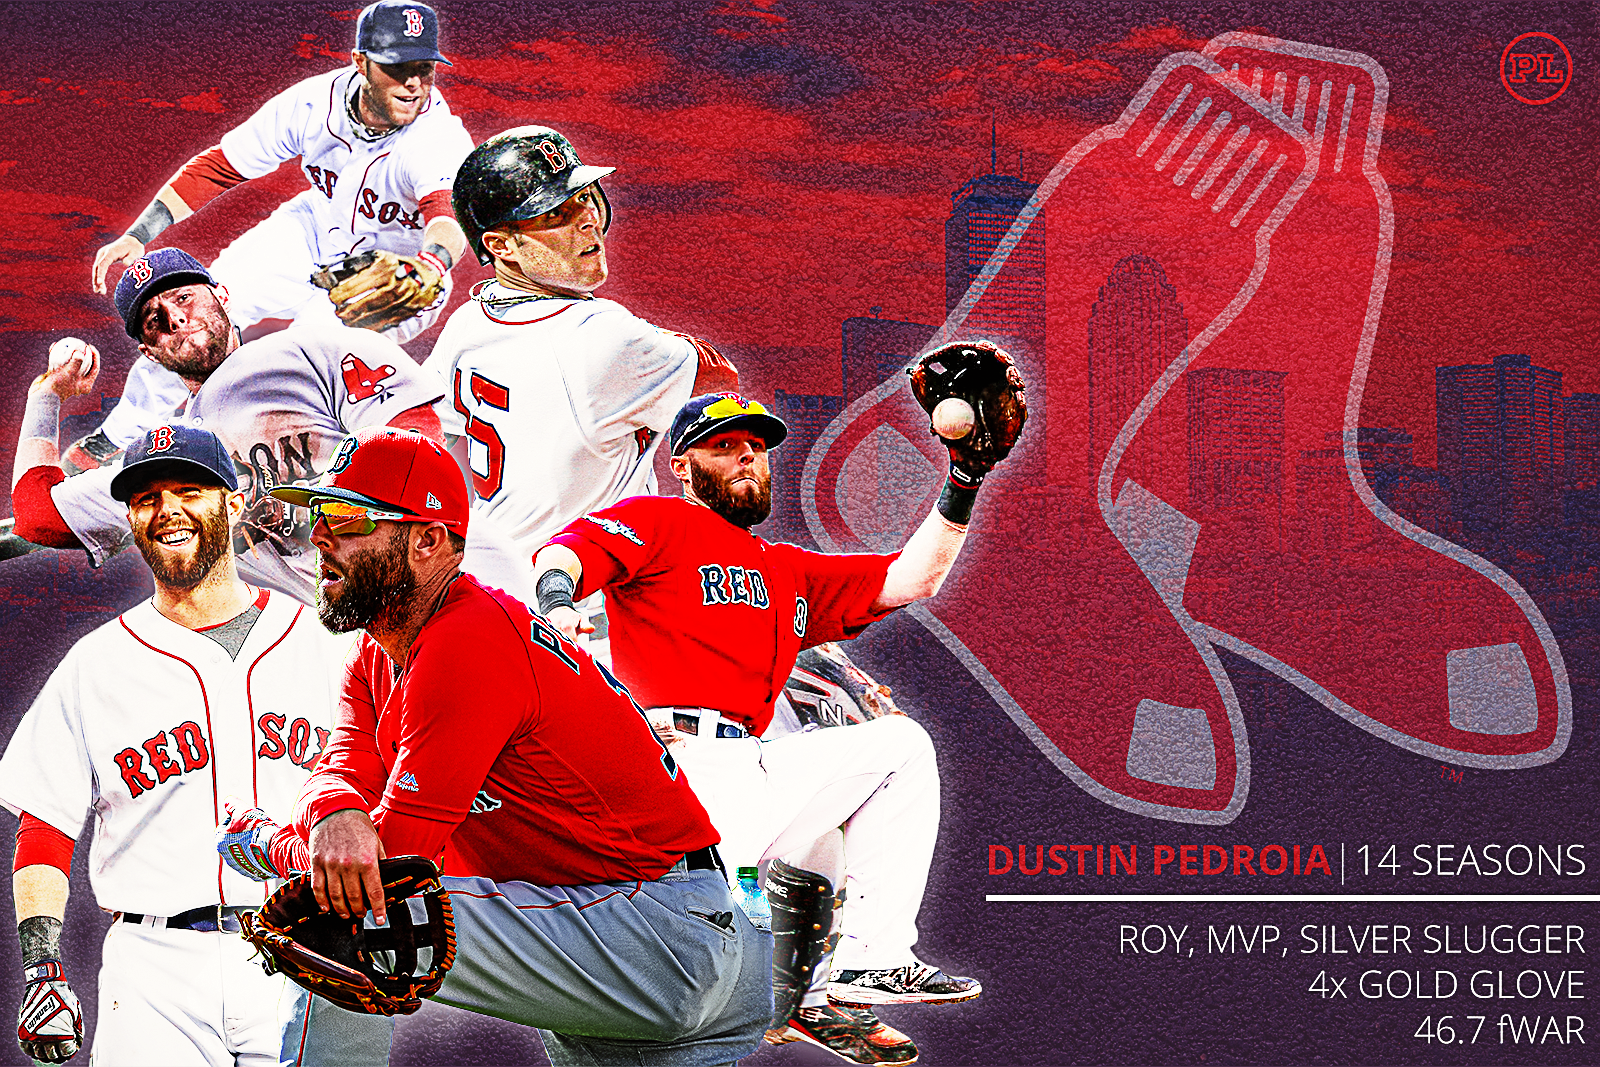 Red Sox 2B, 2008 AL MVP Dustin Pedroia retires